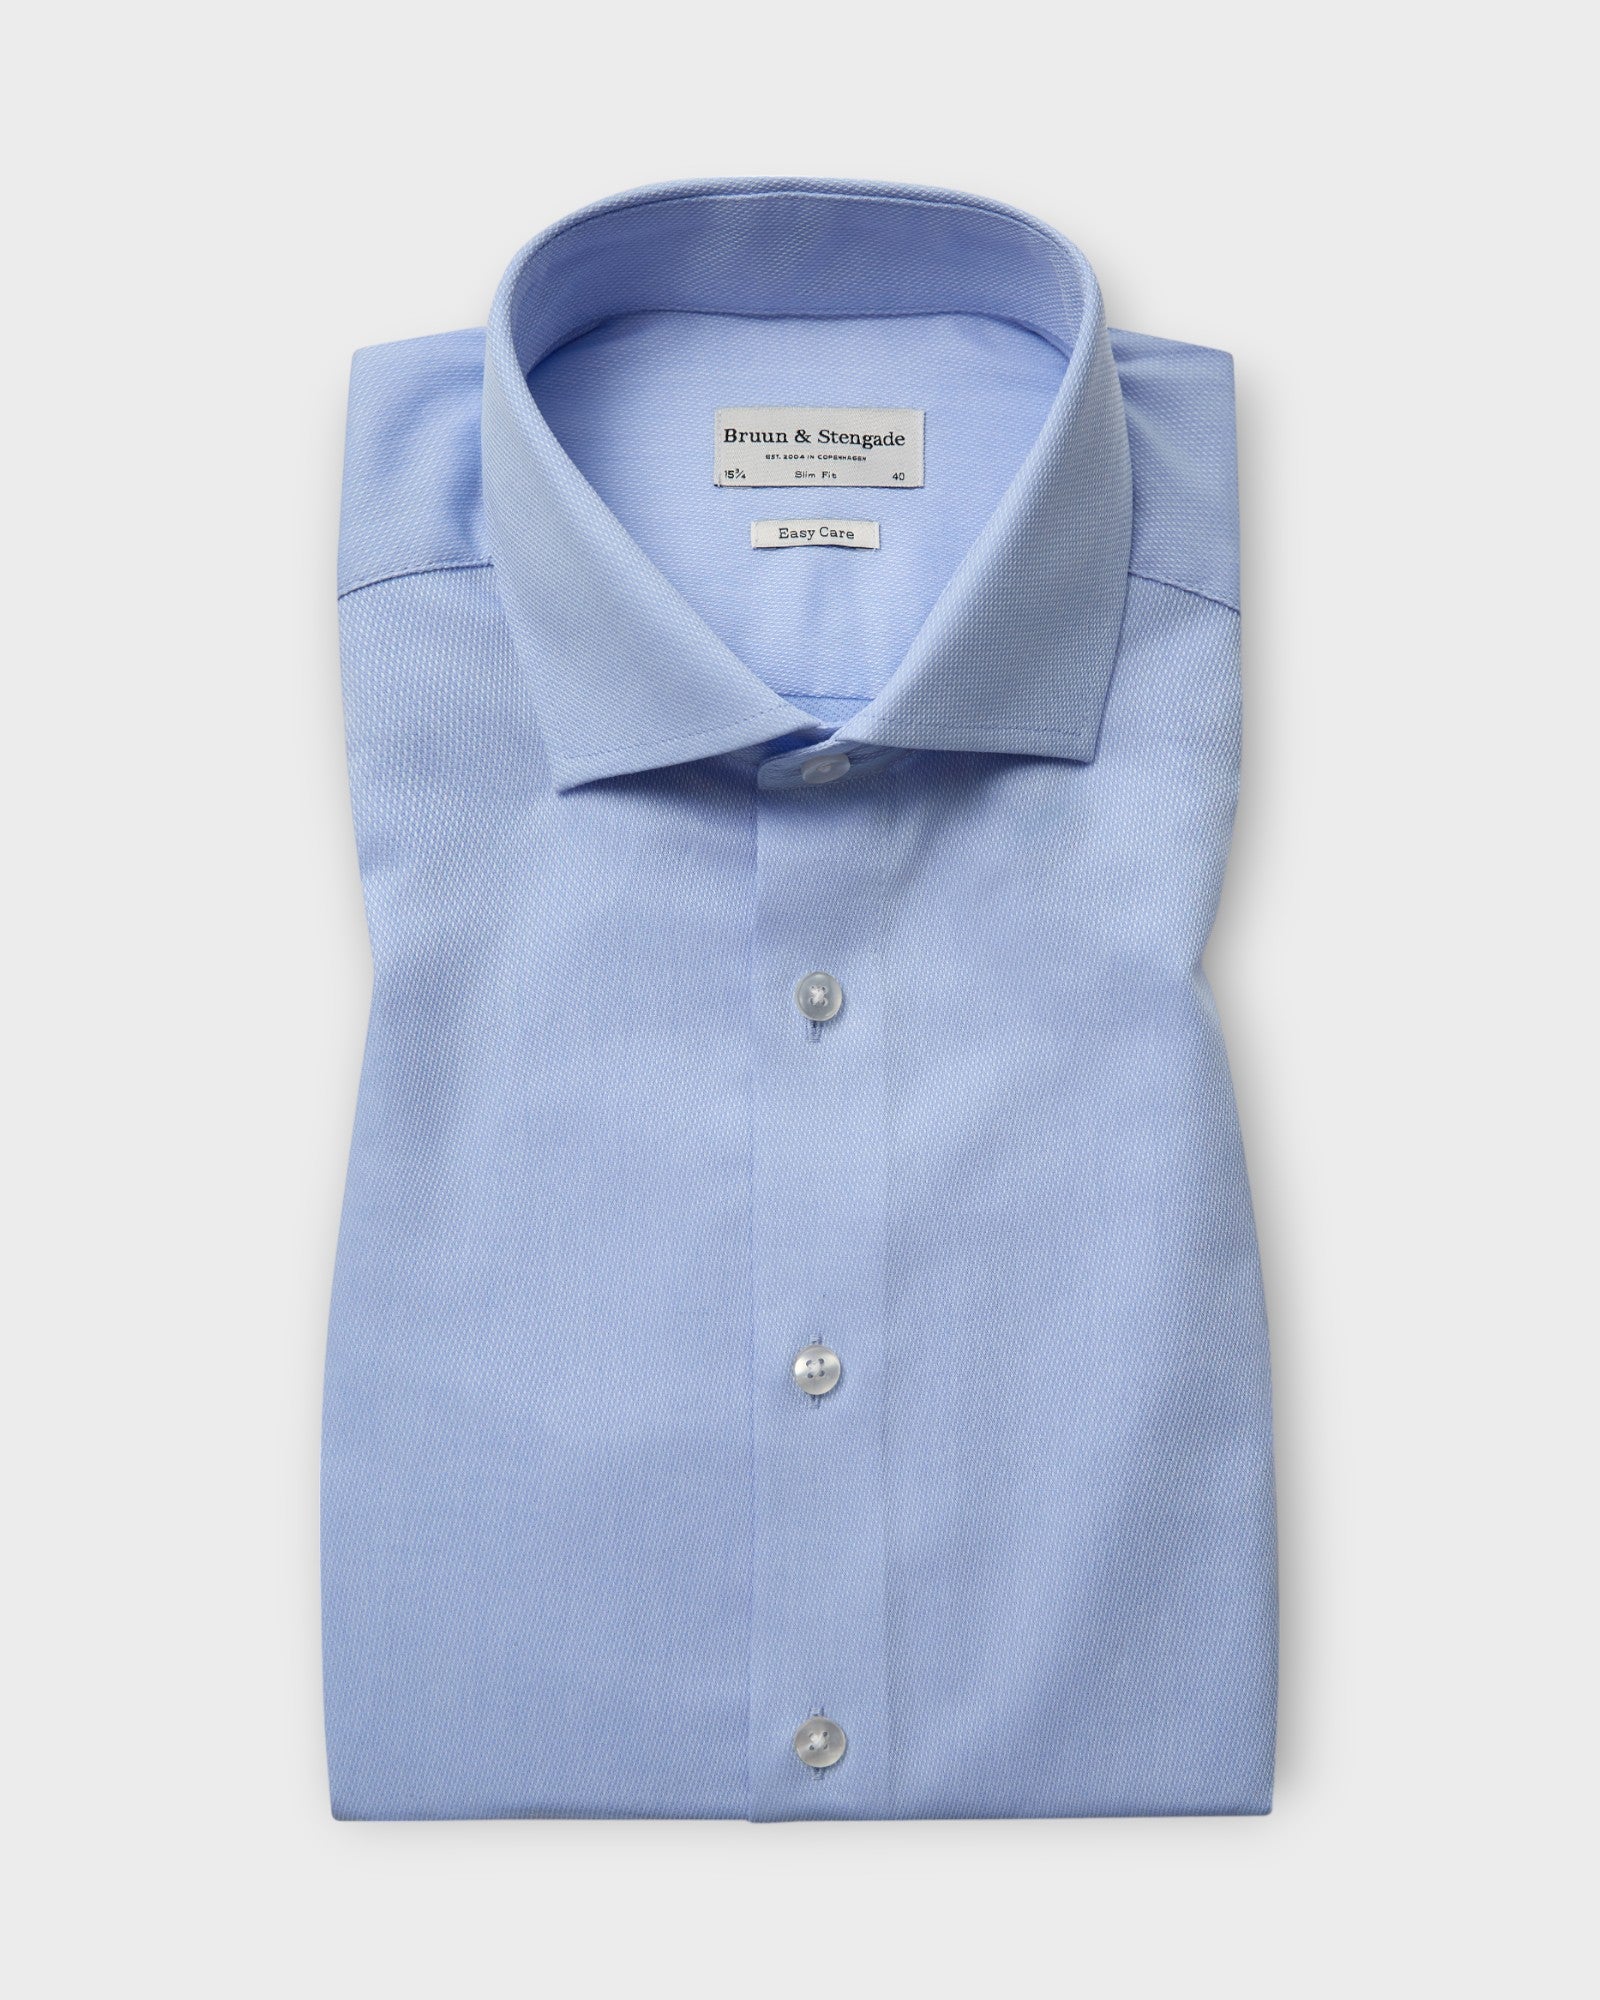 Jackson Slim Fit Shirt Light Blue fra Bruun og Stengade. Lyseblå langærmet skjorte til mænd. Her set forfra.